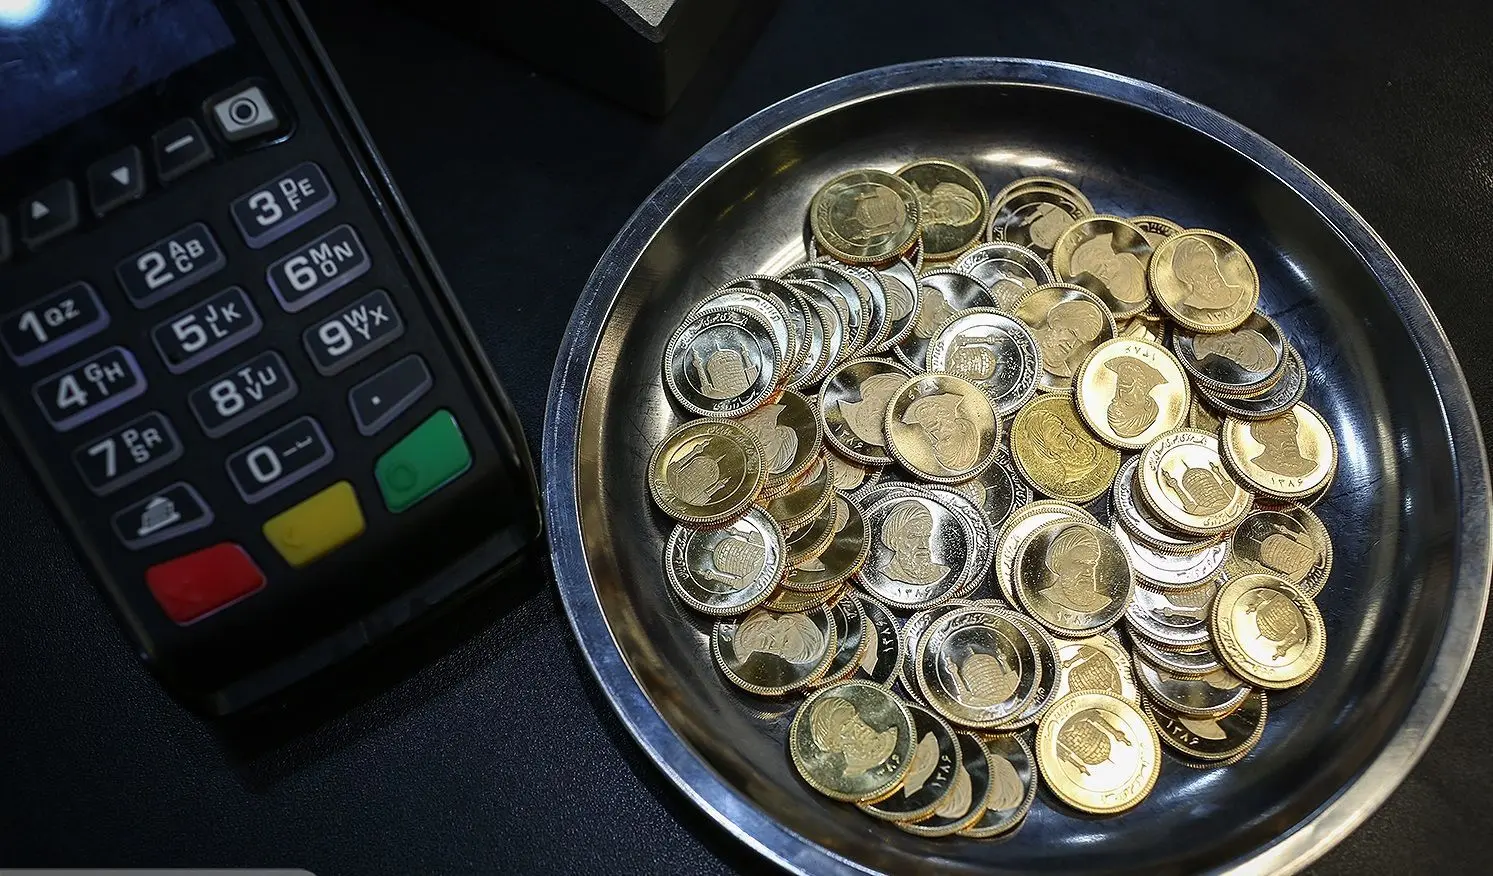 جزییات اولین روز حراج ربع سکه در مرکز مبادله/ قیمت: ۹.۵ میلیون تومان

